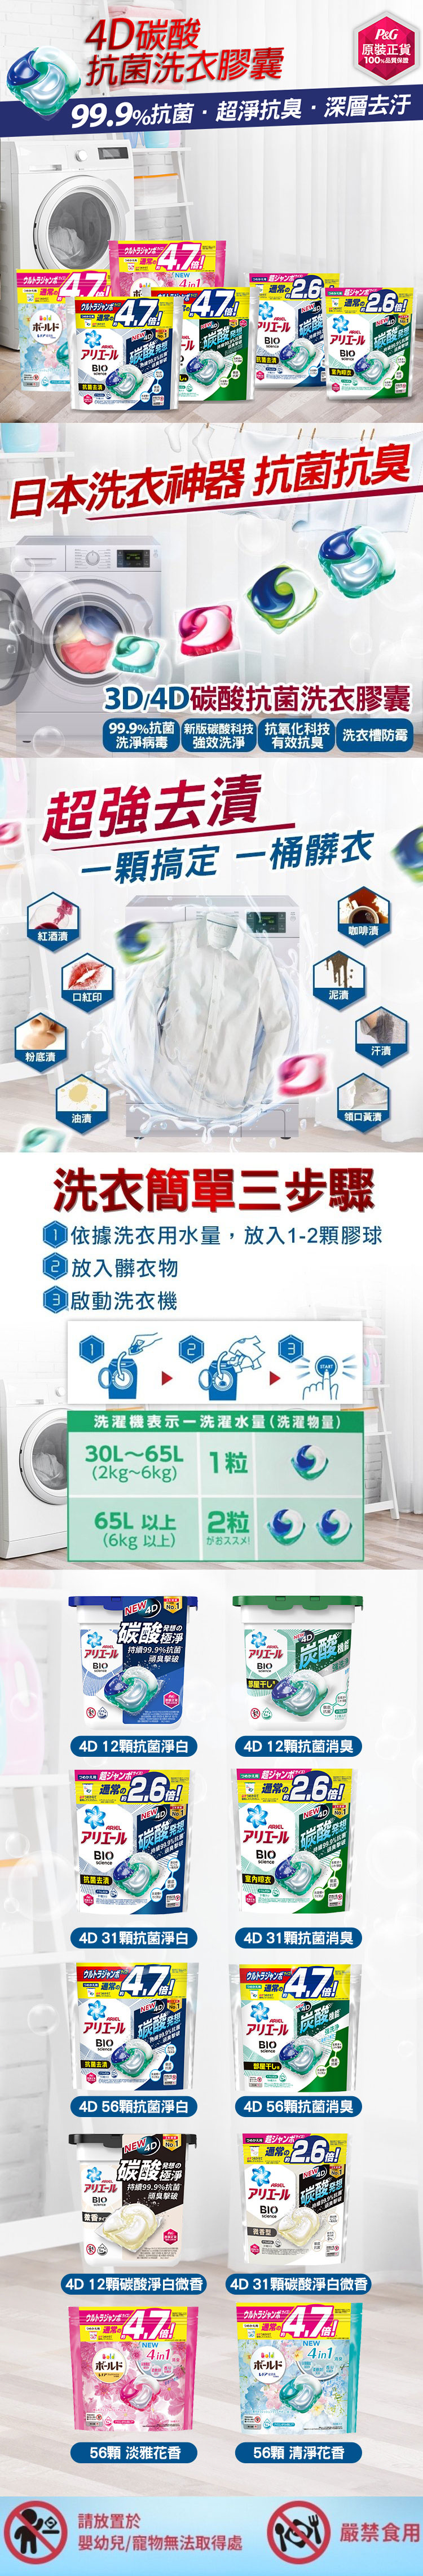 【P&G寶僑】ARIEL 4D碳酸機能洗衣球/洗衣膠球補充包(抗菌消臭/微香)